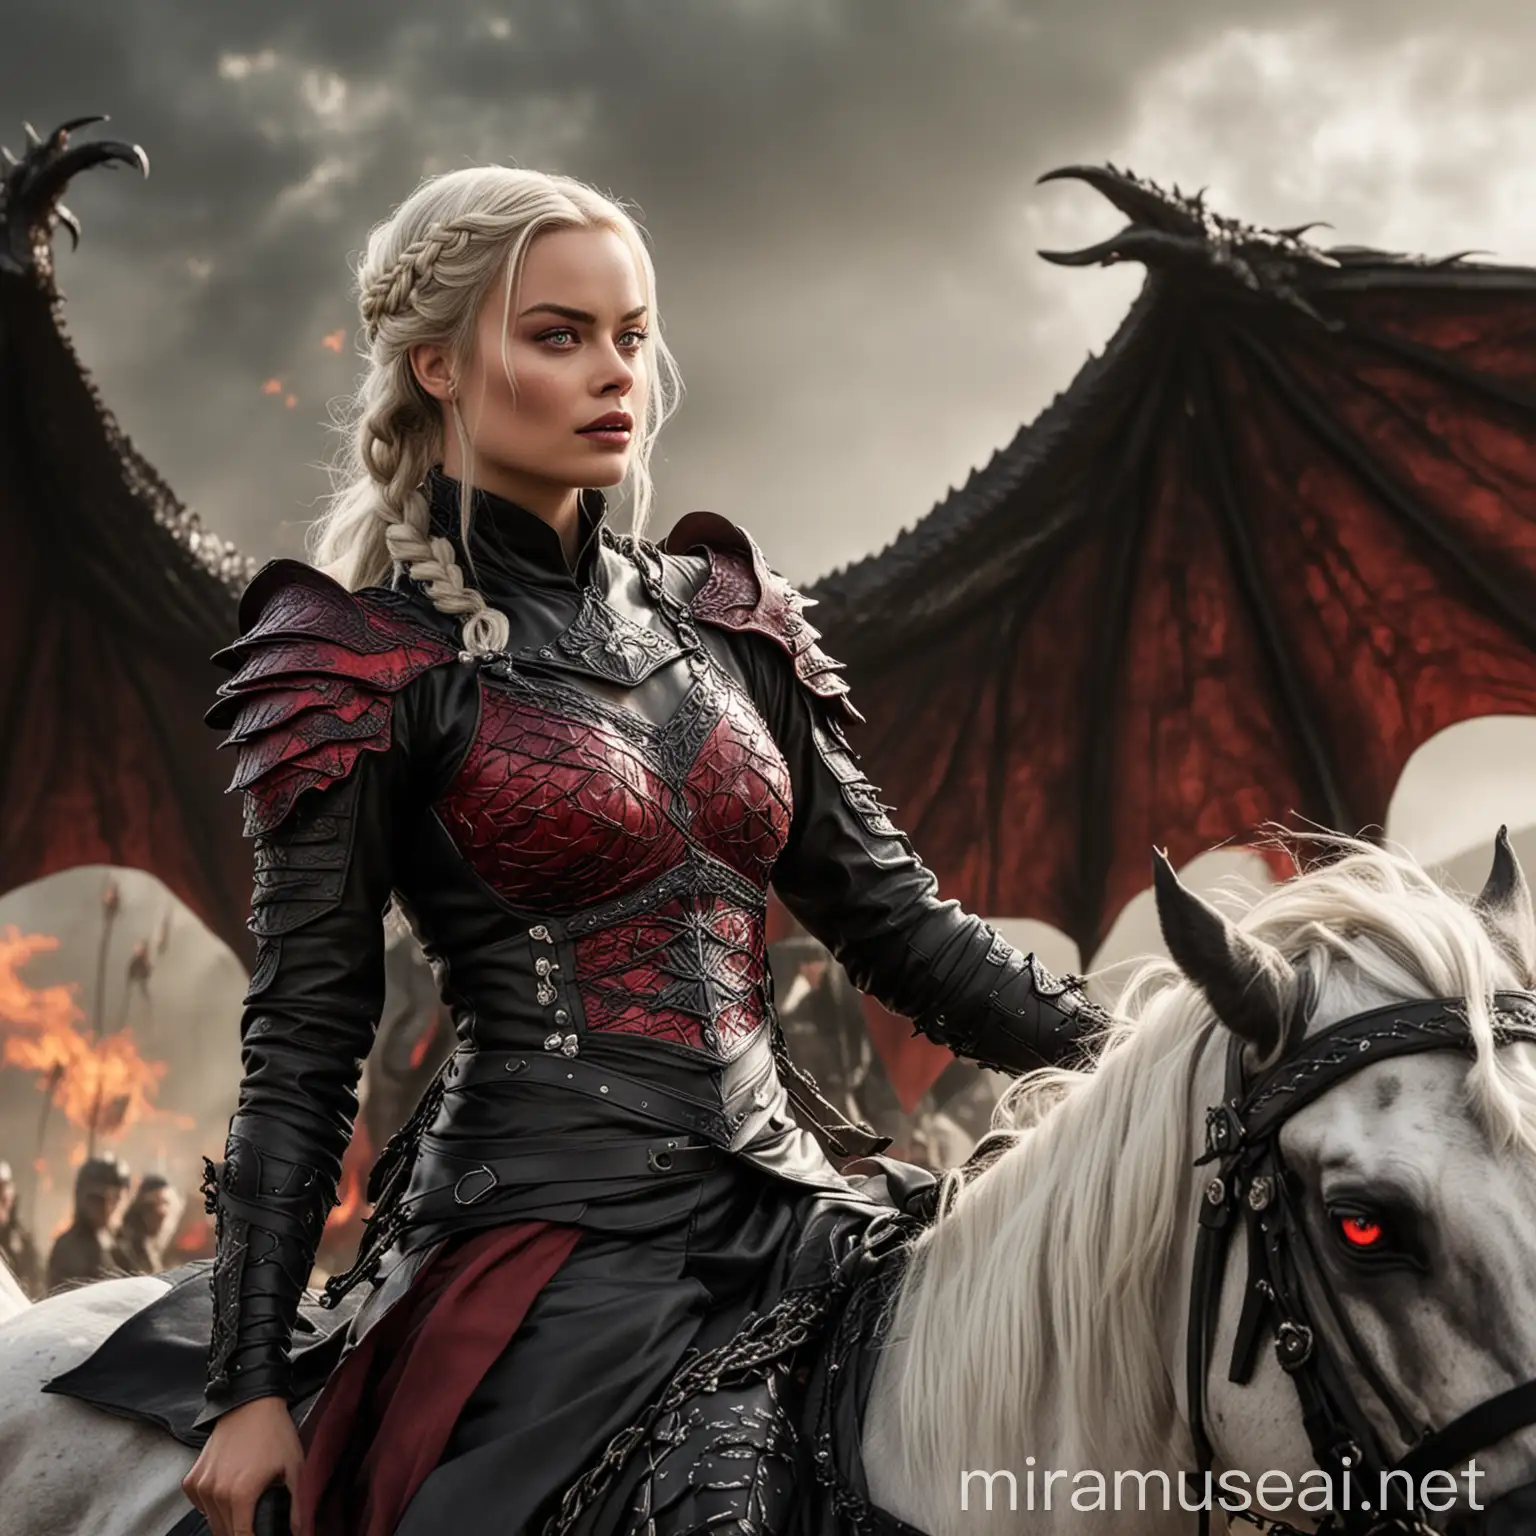 Margot Robbie as Targaryen Princess Riding Scarlet Dragon